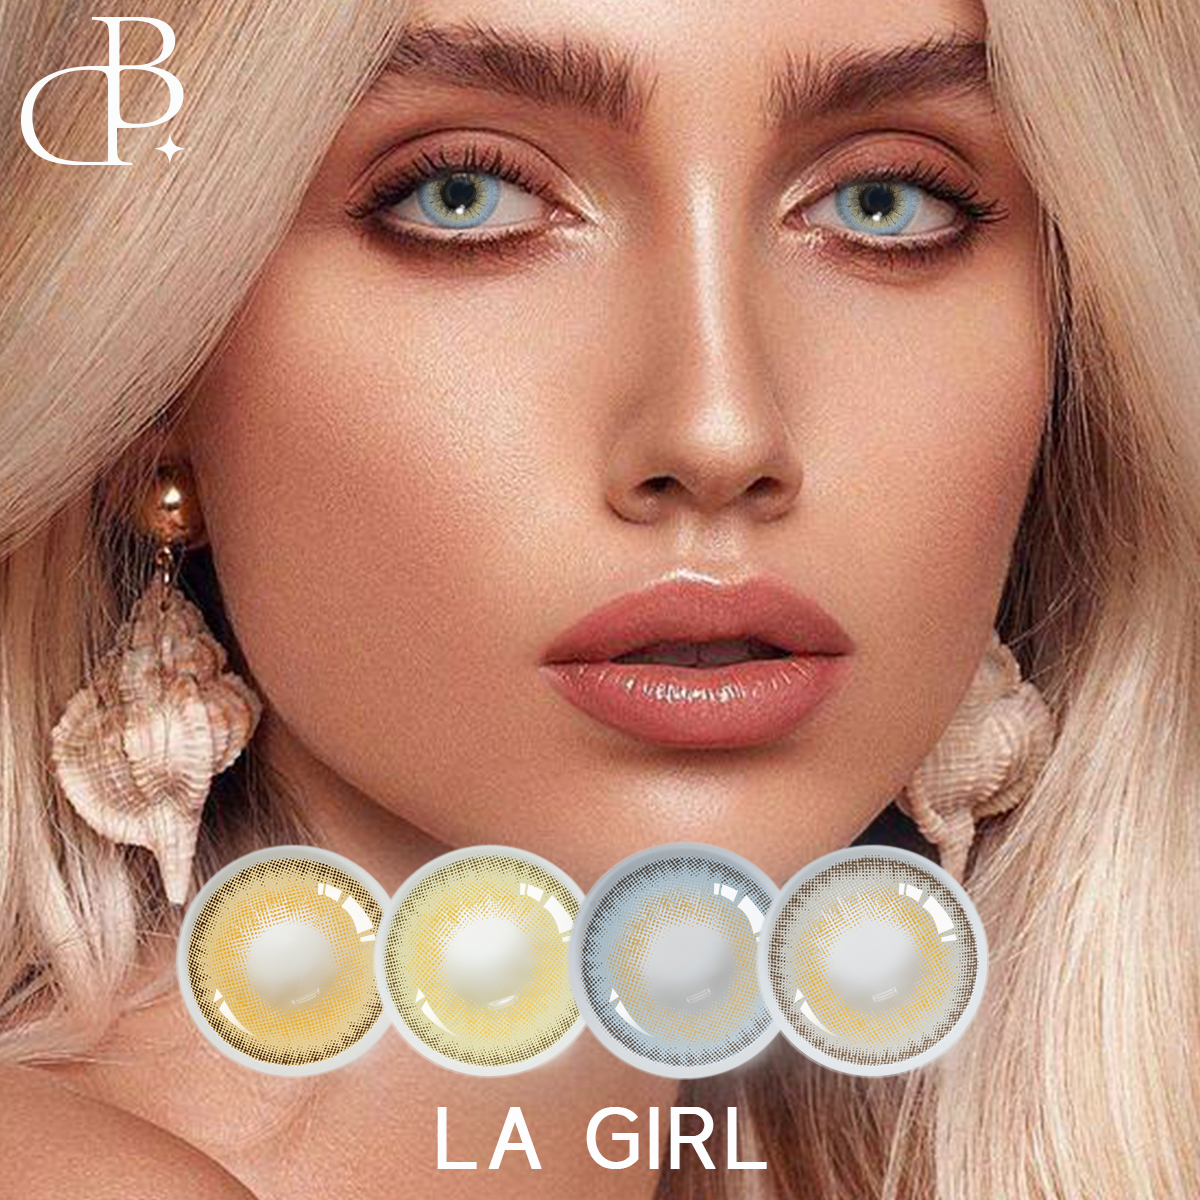 LA GIRL سالانه آرایشی و بهداشتی و زیبای مردمک بزرگ چشمان نرم مردمک لنز رنگی لنزهای تماسی رنگی